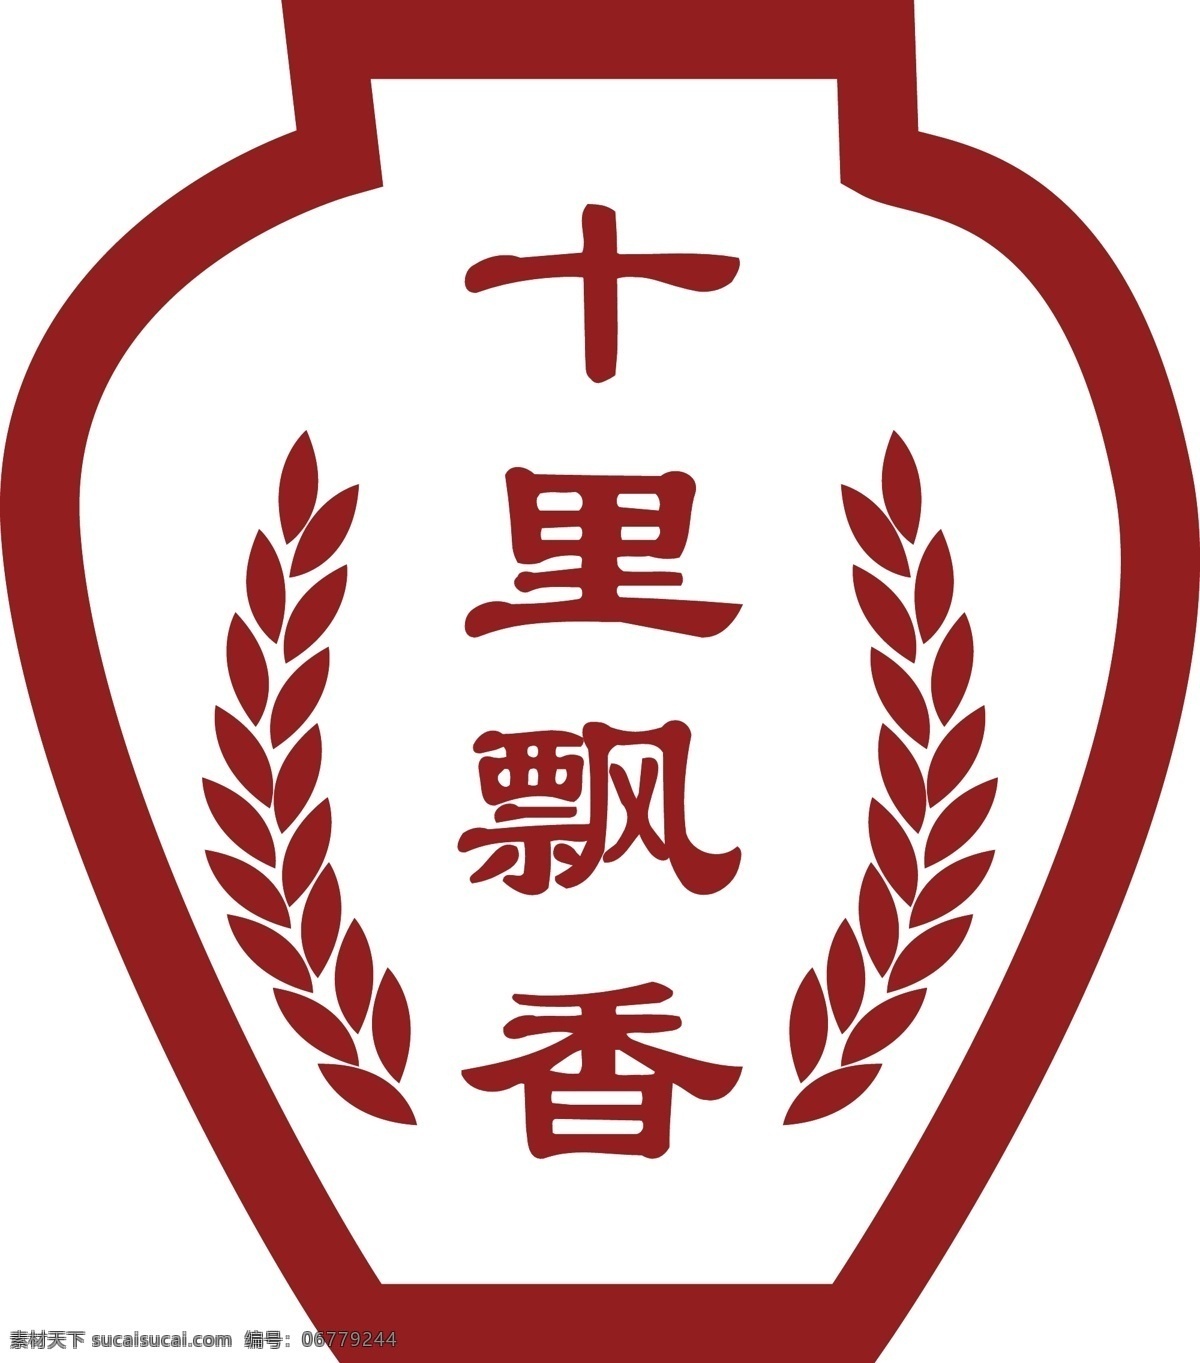 酒logo 白酒logo 白酒商标 酒坛 十里飘香 白酒 标志图标 企业 logo 标志